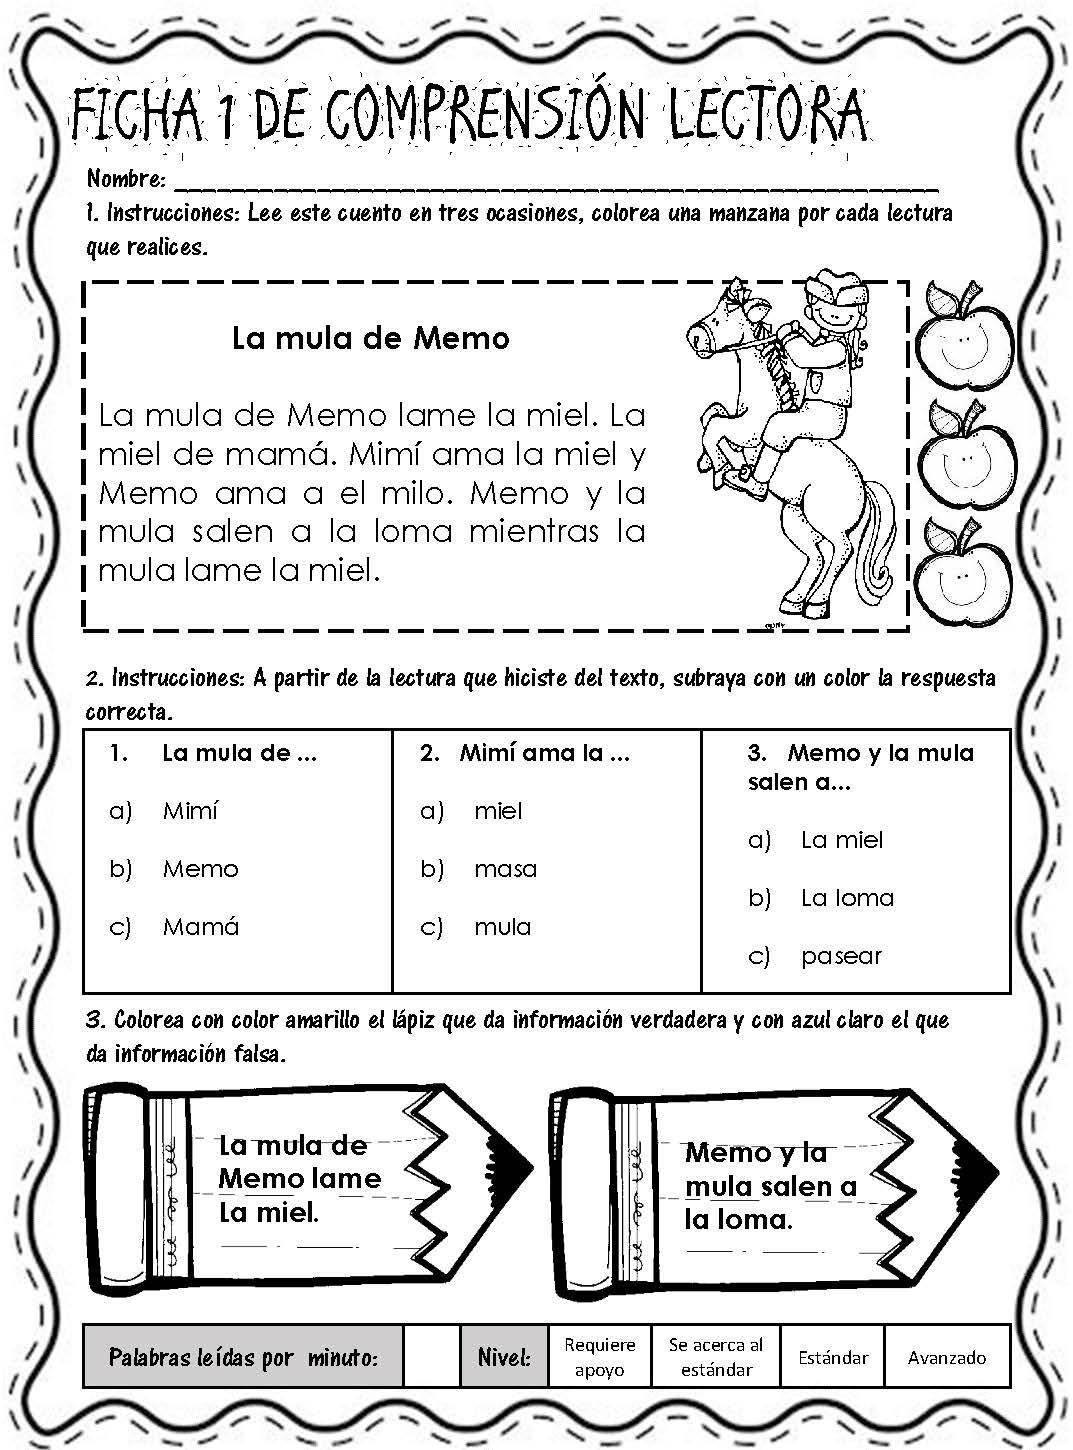 Lecturitas I Fichas De Comprensión Lectorapágina04 Imagenes Educativas